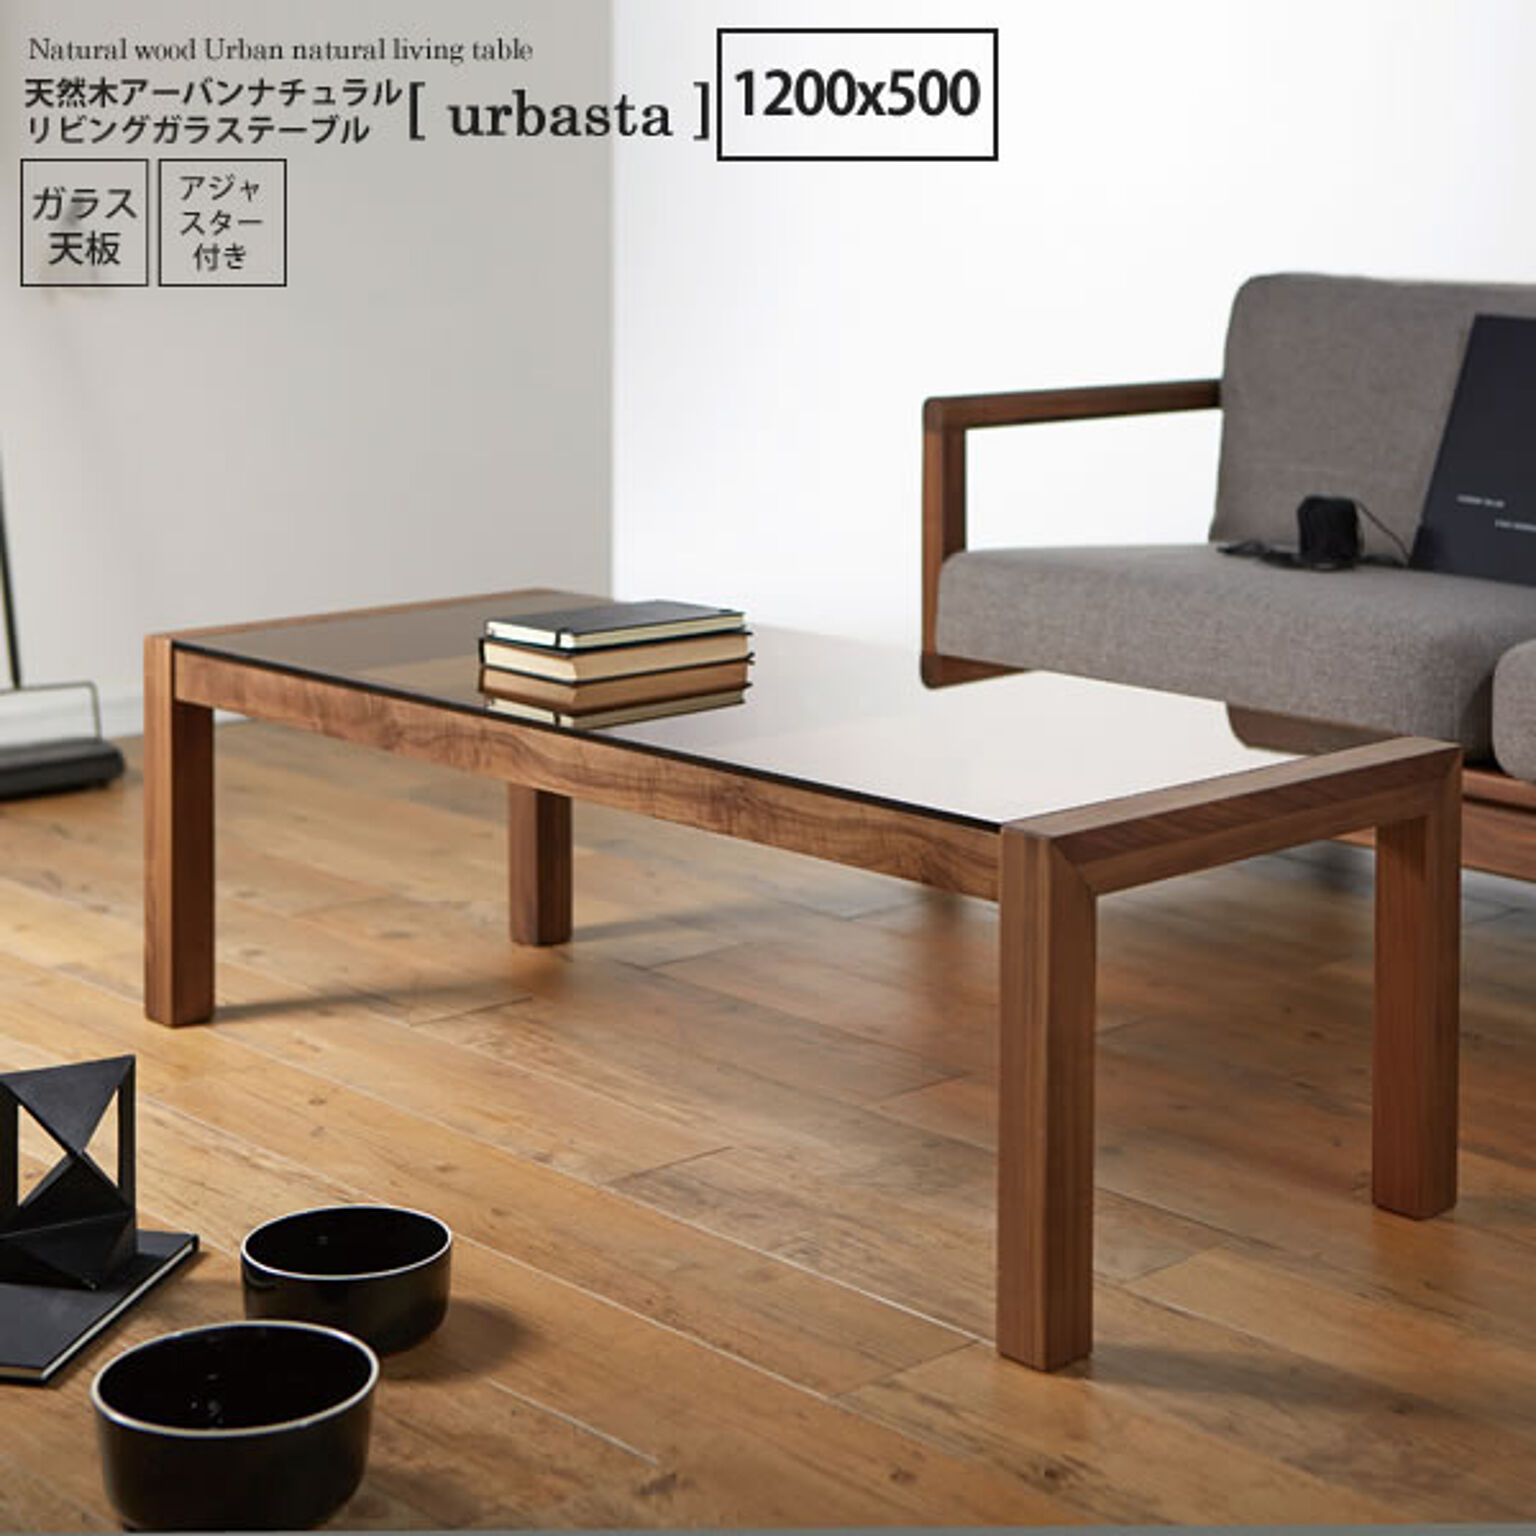 1200x500 ： 天然木アーバンナチュラル リビングガラステーブル【urbasta】 ブラウン(brown) (アーバン) センターテーブル コーヒーテーブル リビング 